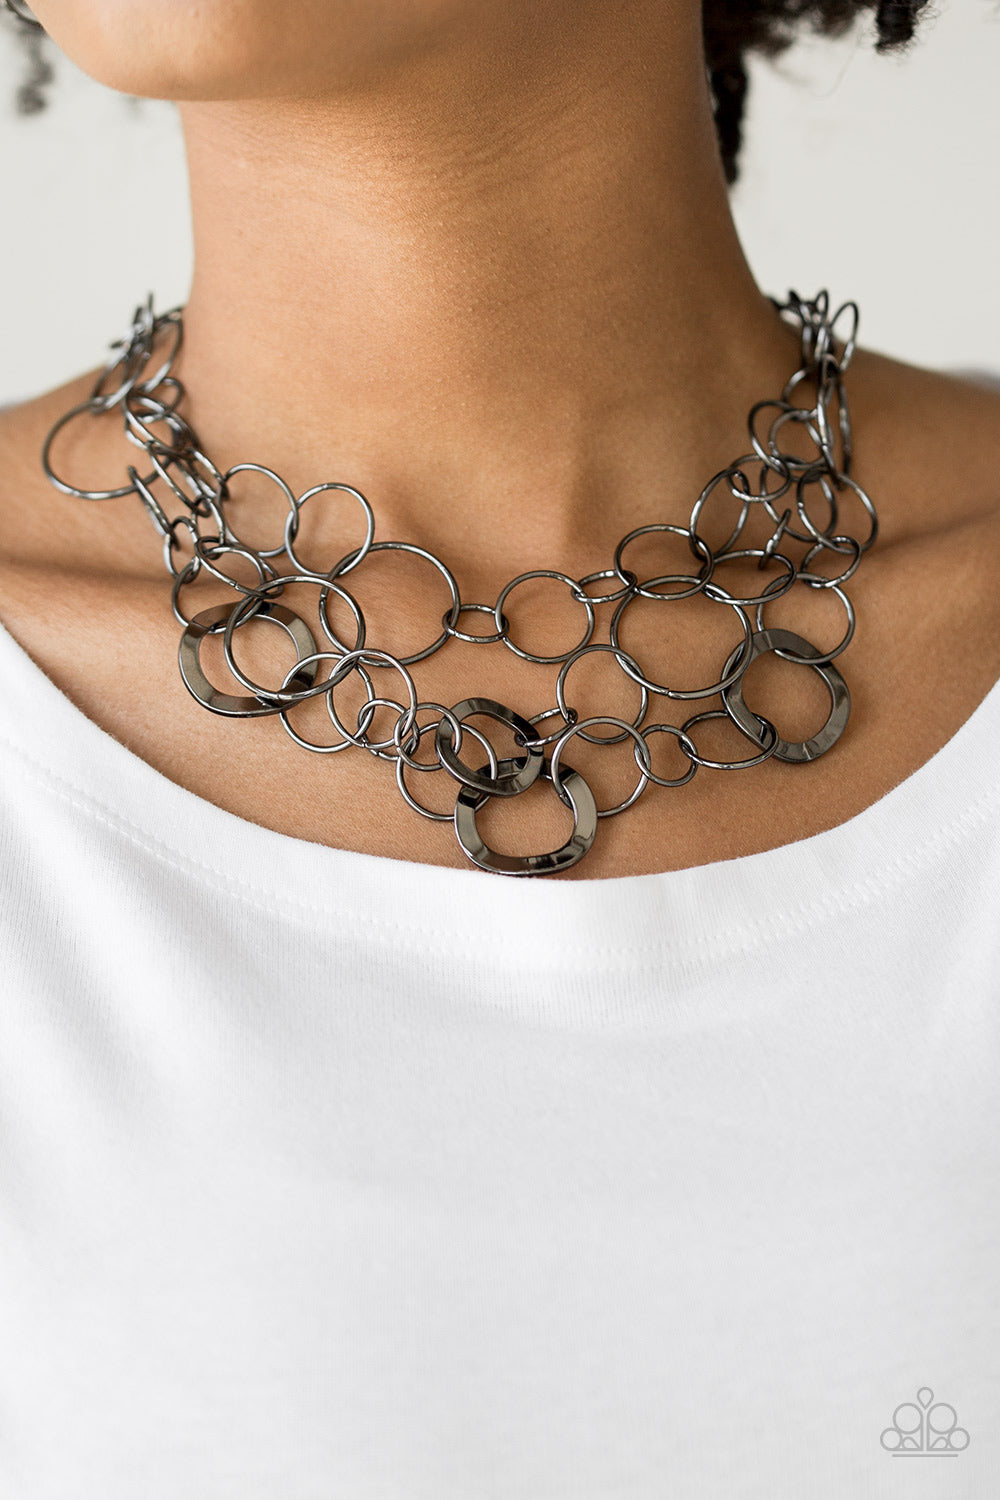 Paparazzi Jewelry Gunmetal CZ Beaded Short Necklace | eBay